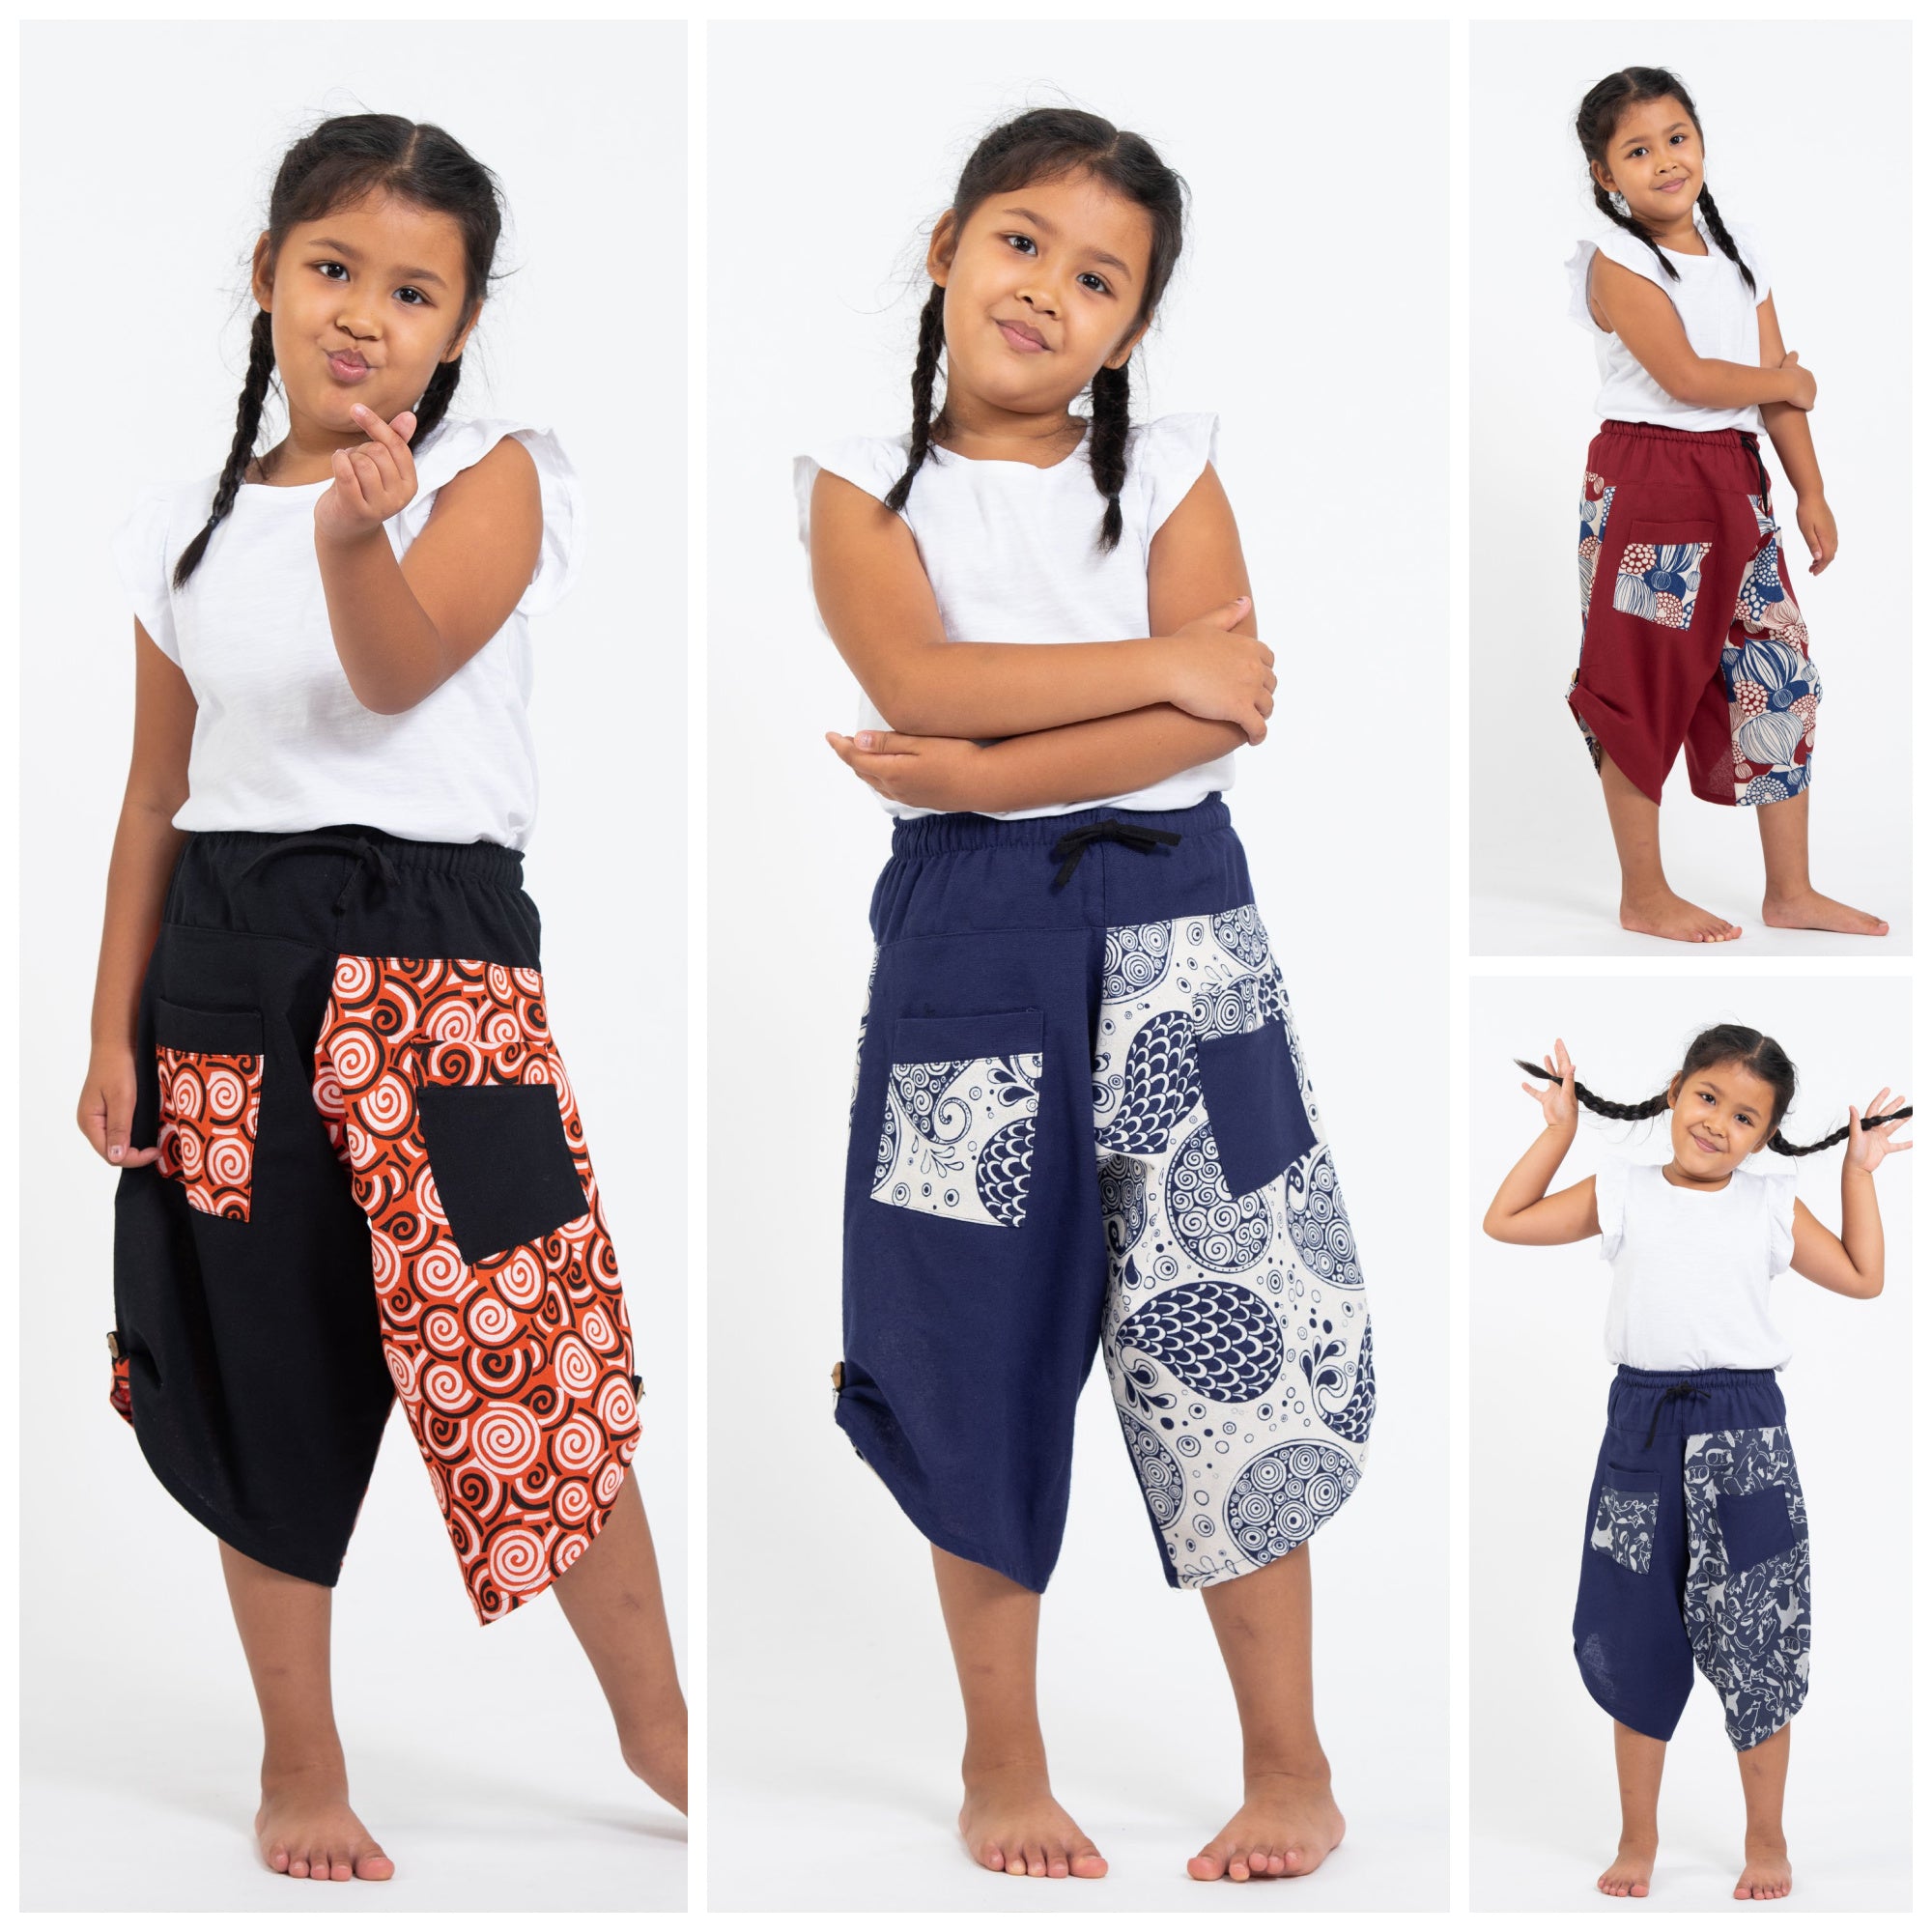 Cotton Harem Pants - Wide Elastic Waistband, Free Size - Yogamasti